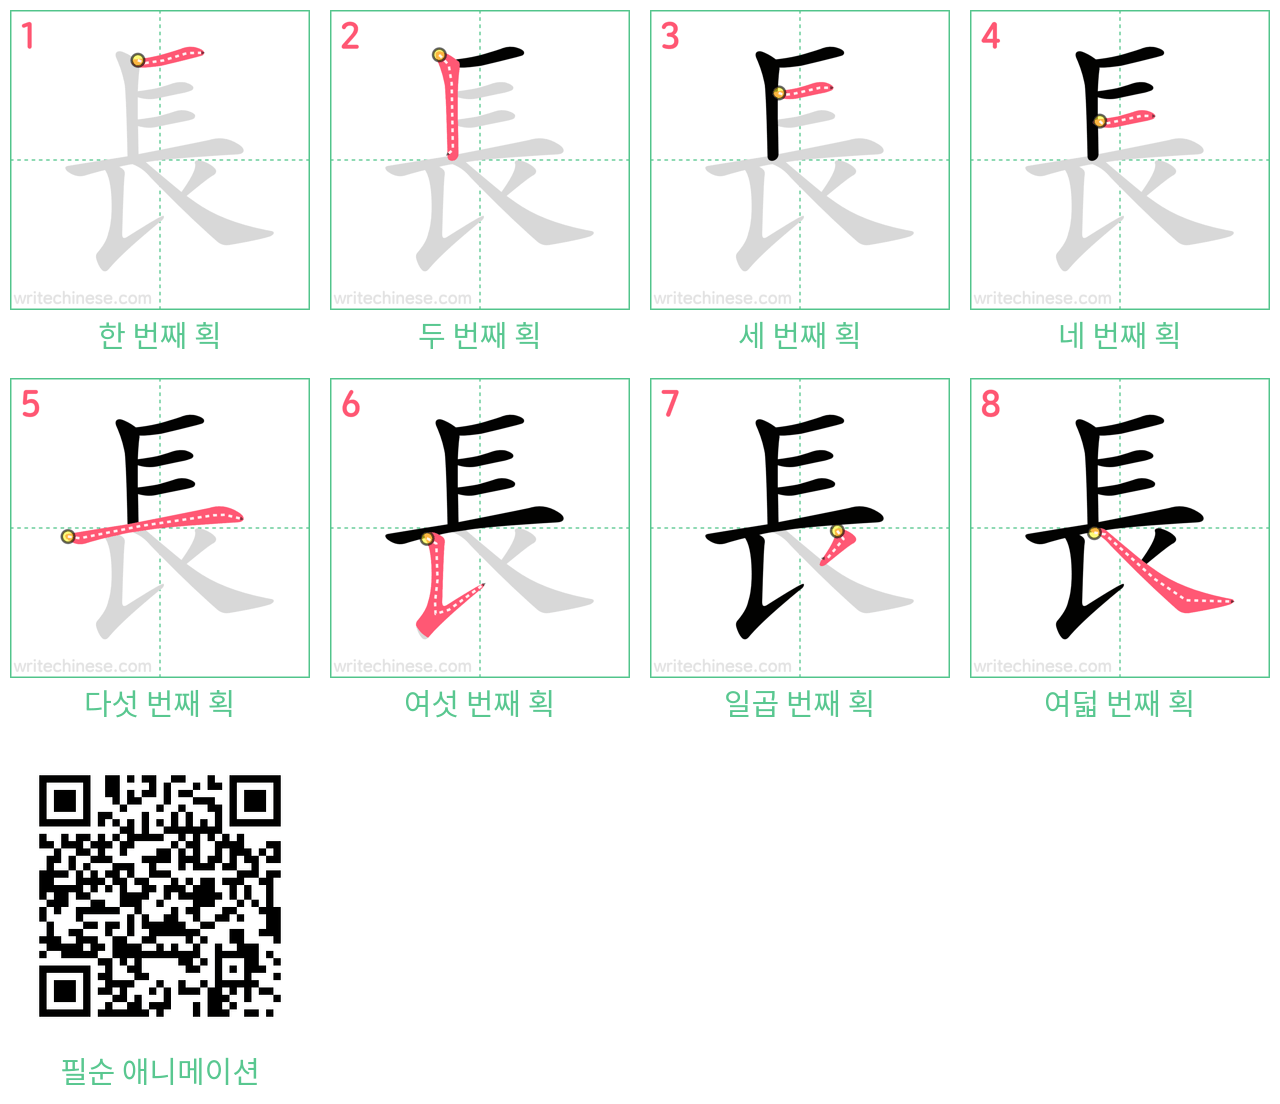 長 step-by-step stroke order diagrams